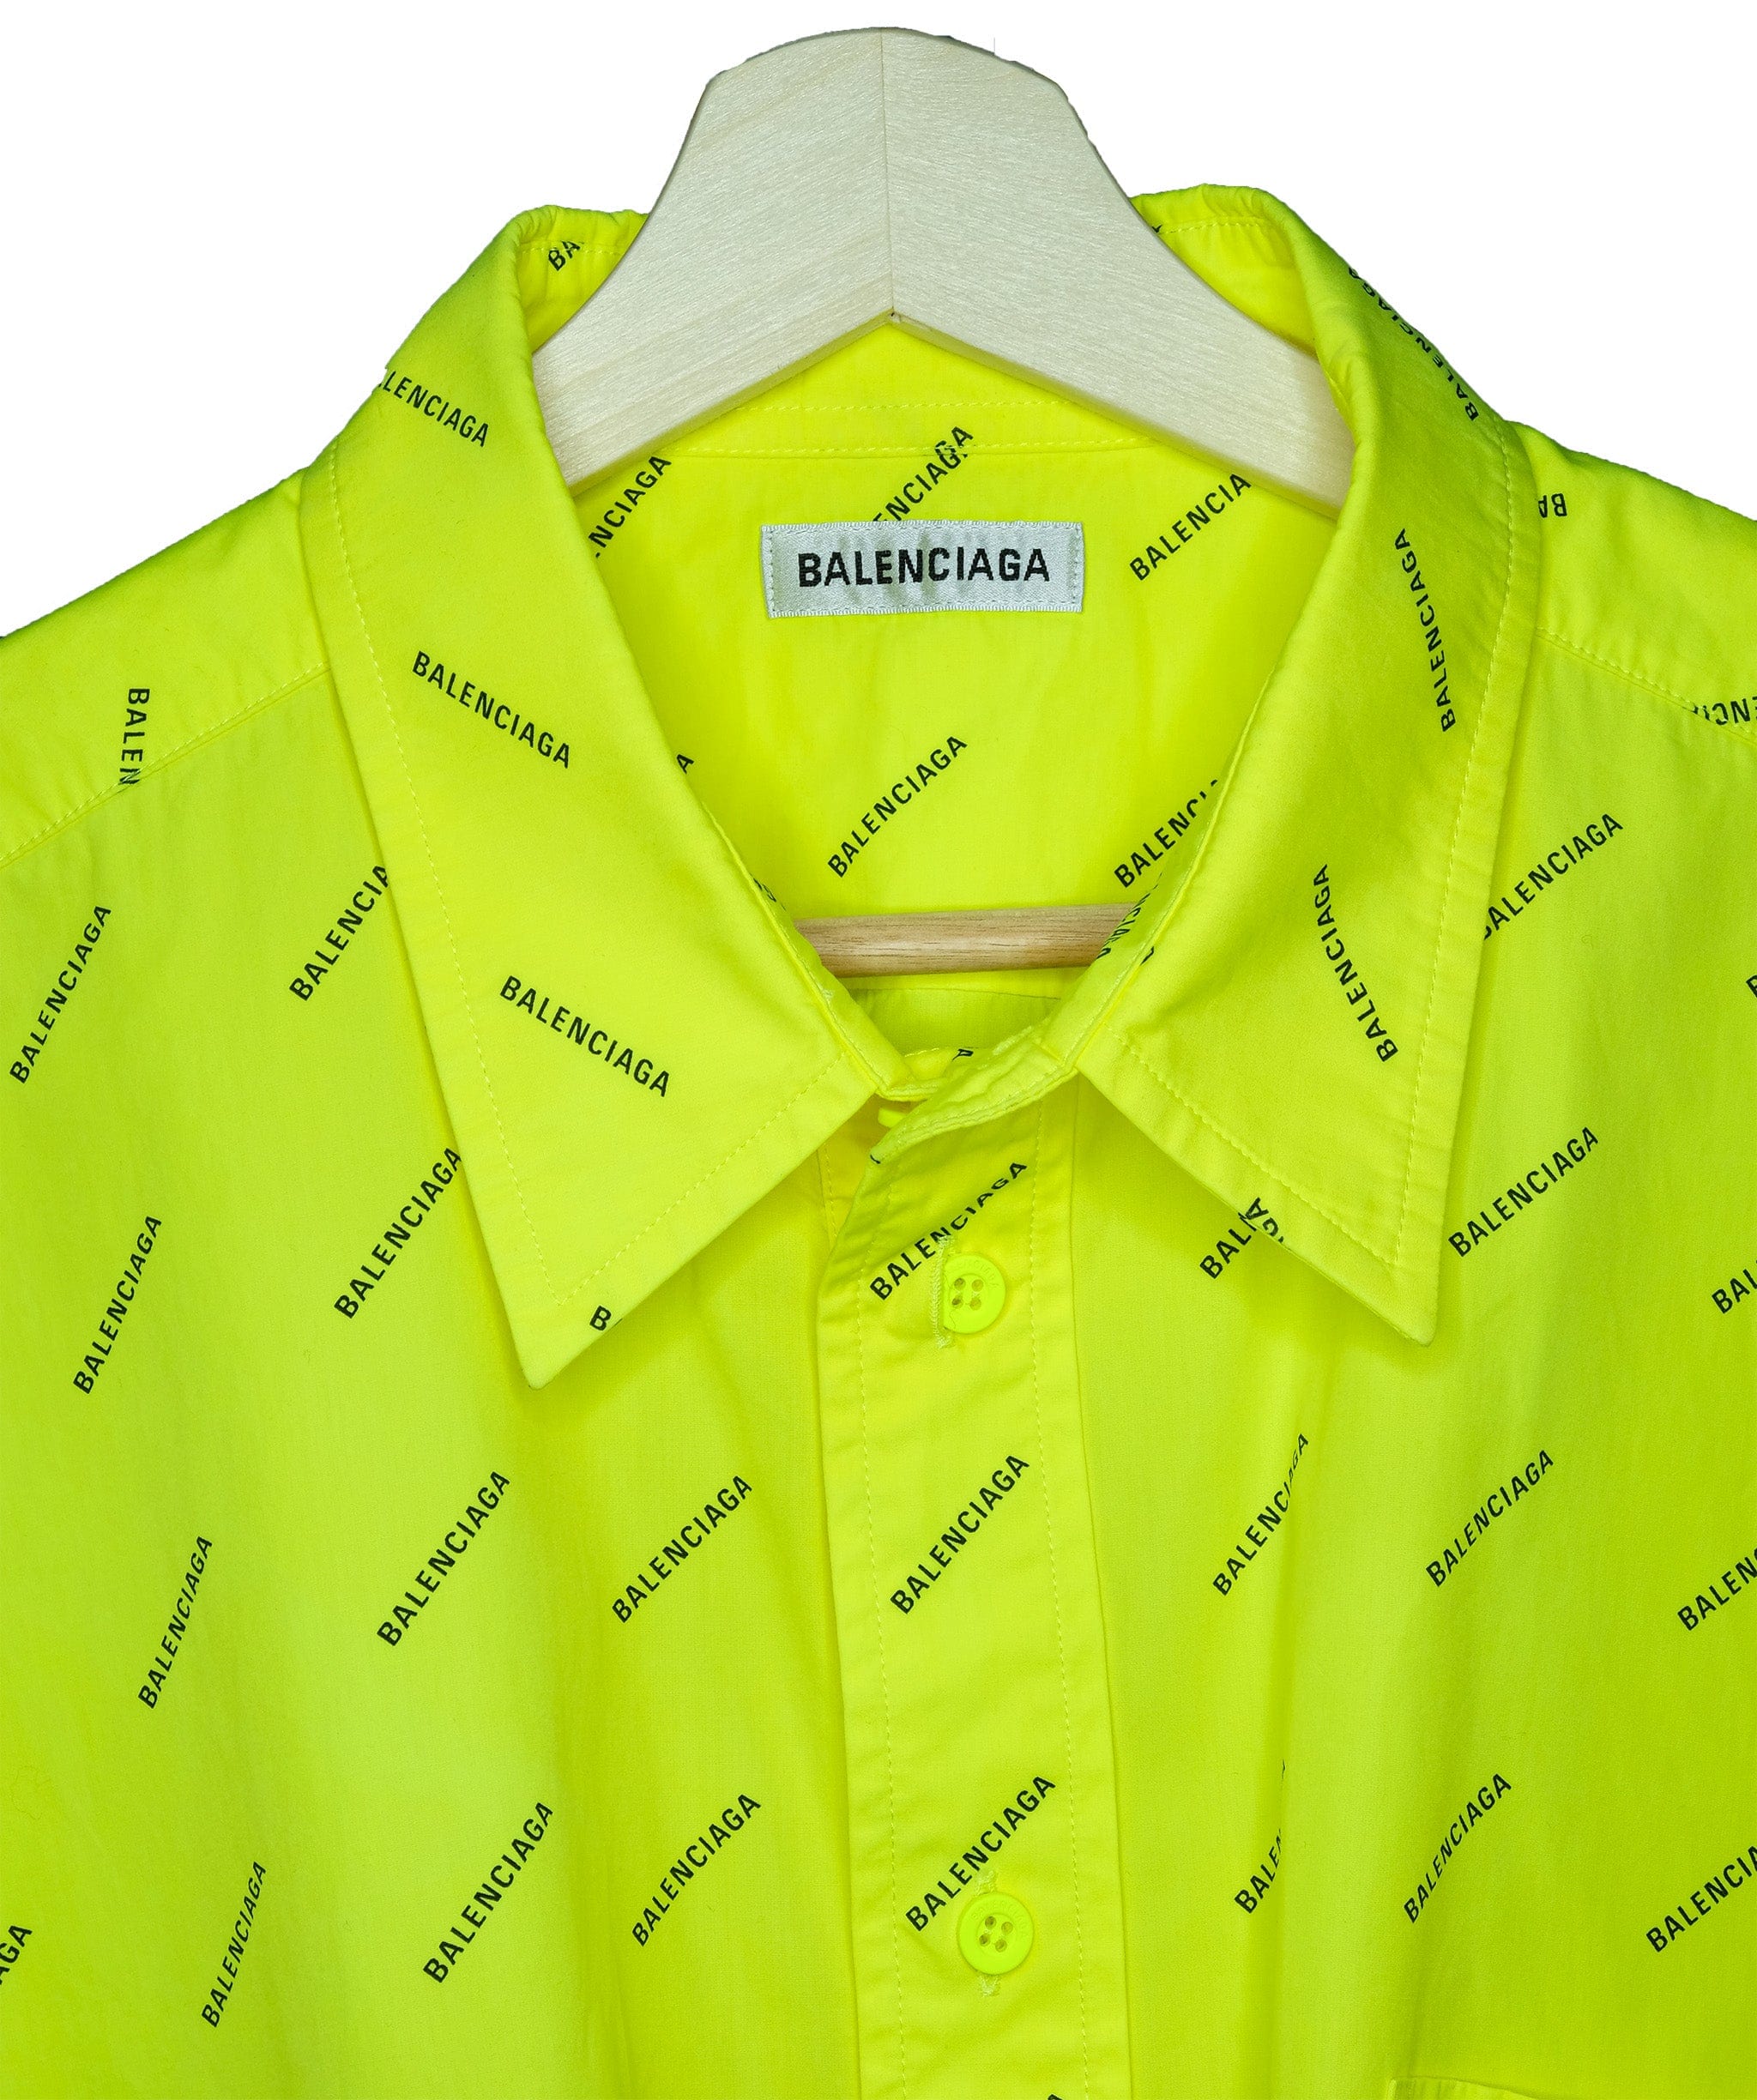 Balenciaga Balenciaga Neon Yellow Shirt RJC1433